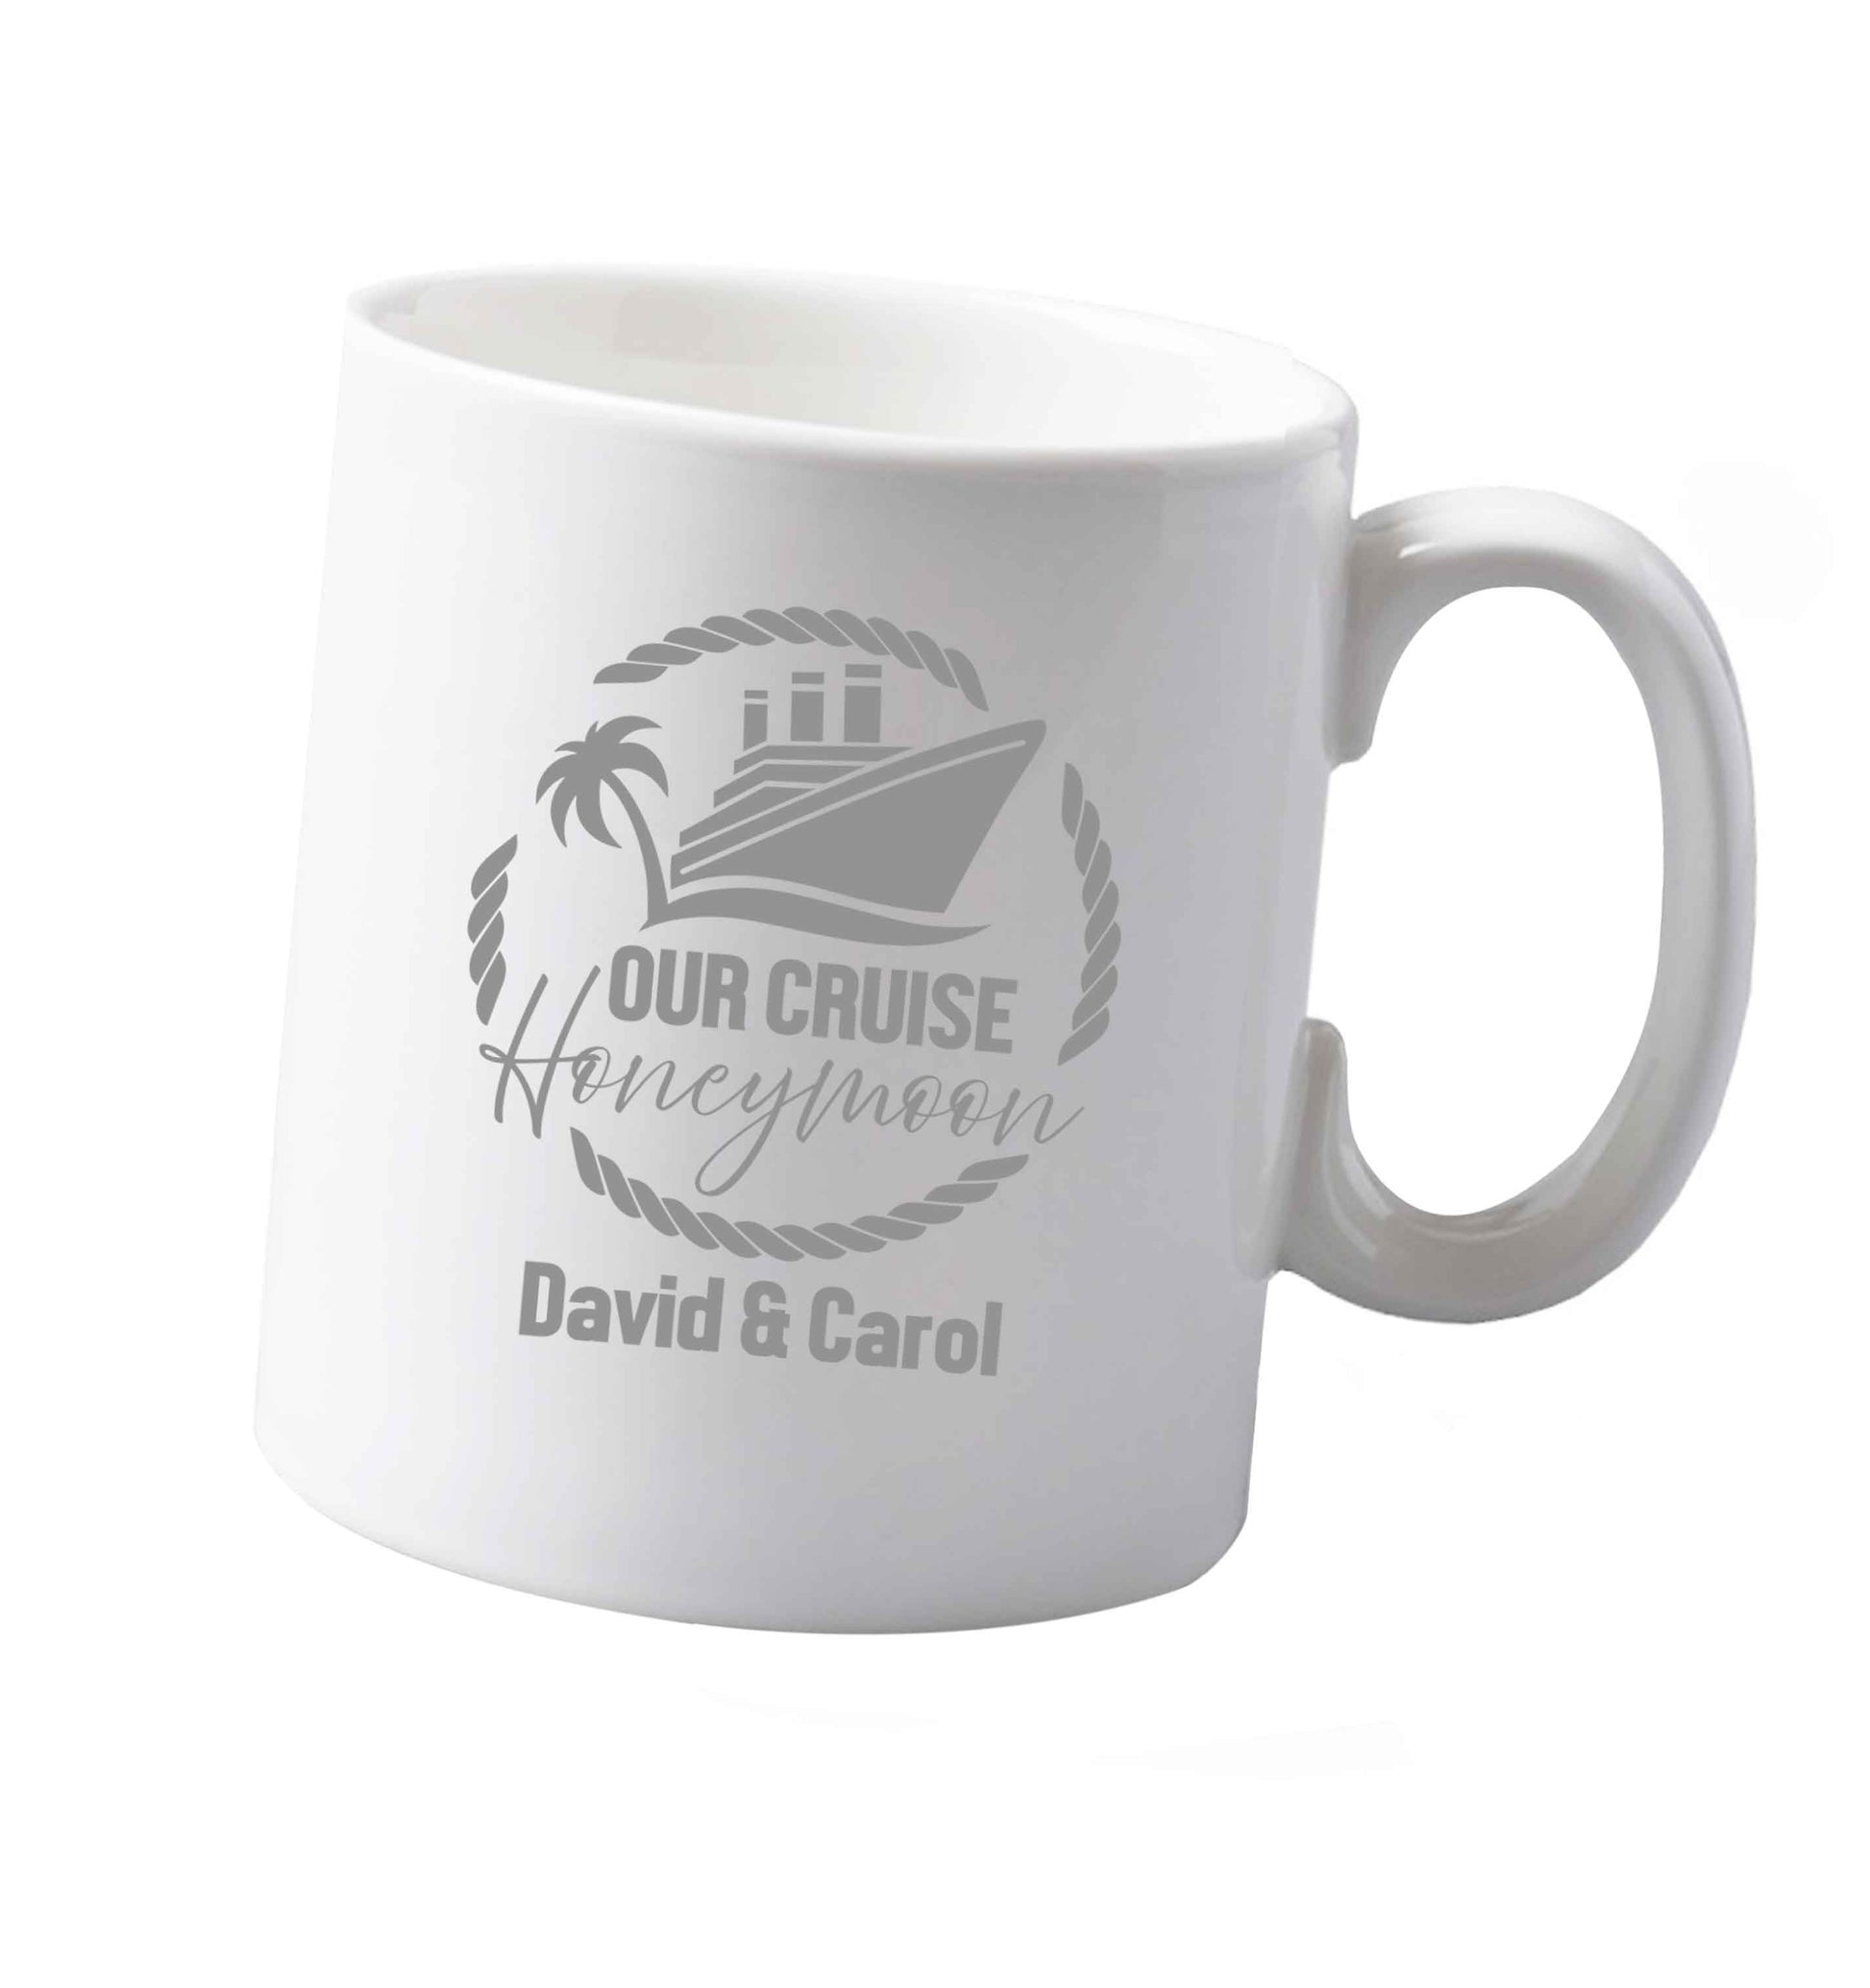 10 oz Our cruise honeymoon personalised ceramic mug both sides